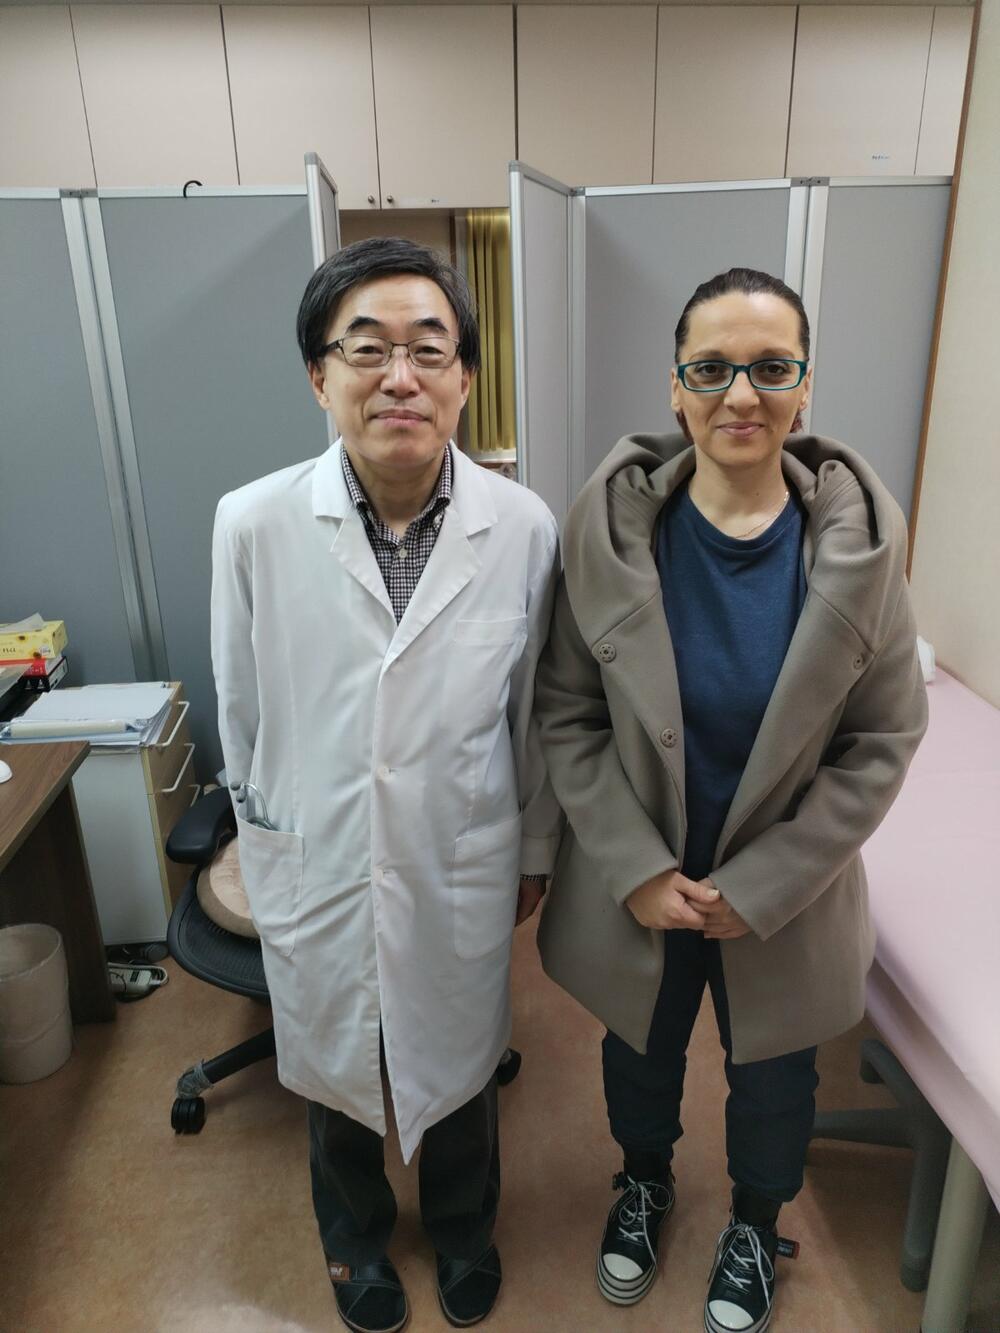 Zaga sa doktorom u klinici u Osaki 